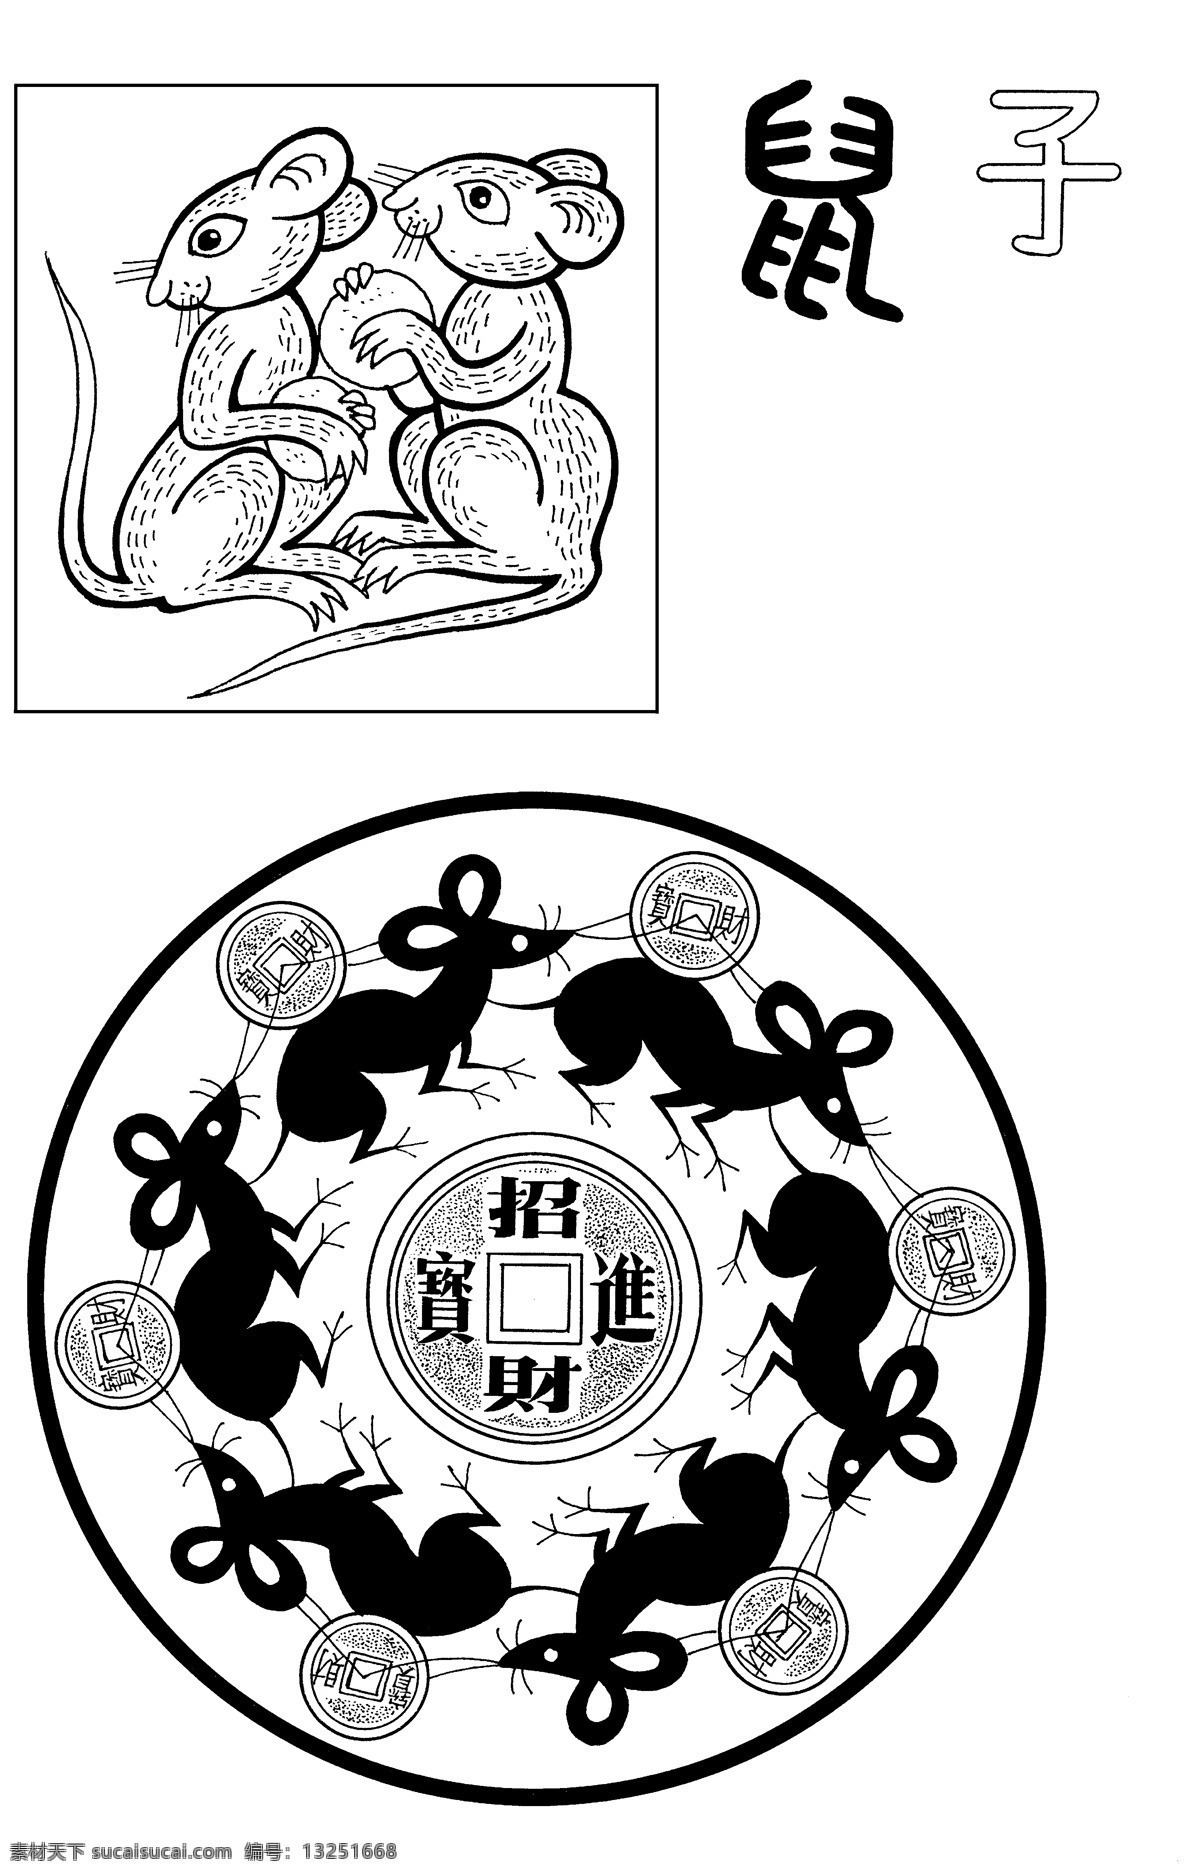 传统吉祥图片 十二生肖 子鼠 老鼠 鼠咬钱 金钱鼠 古钱 招财进宝 传统文化 吉祥 图 文化艺术